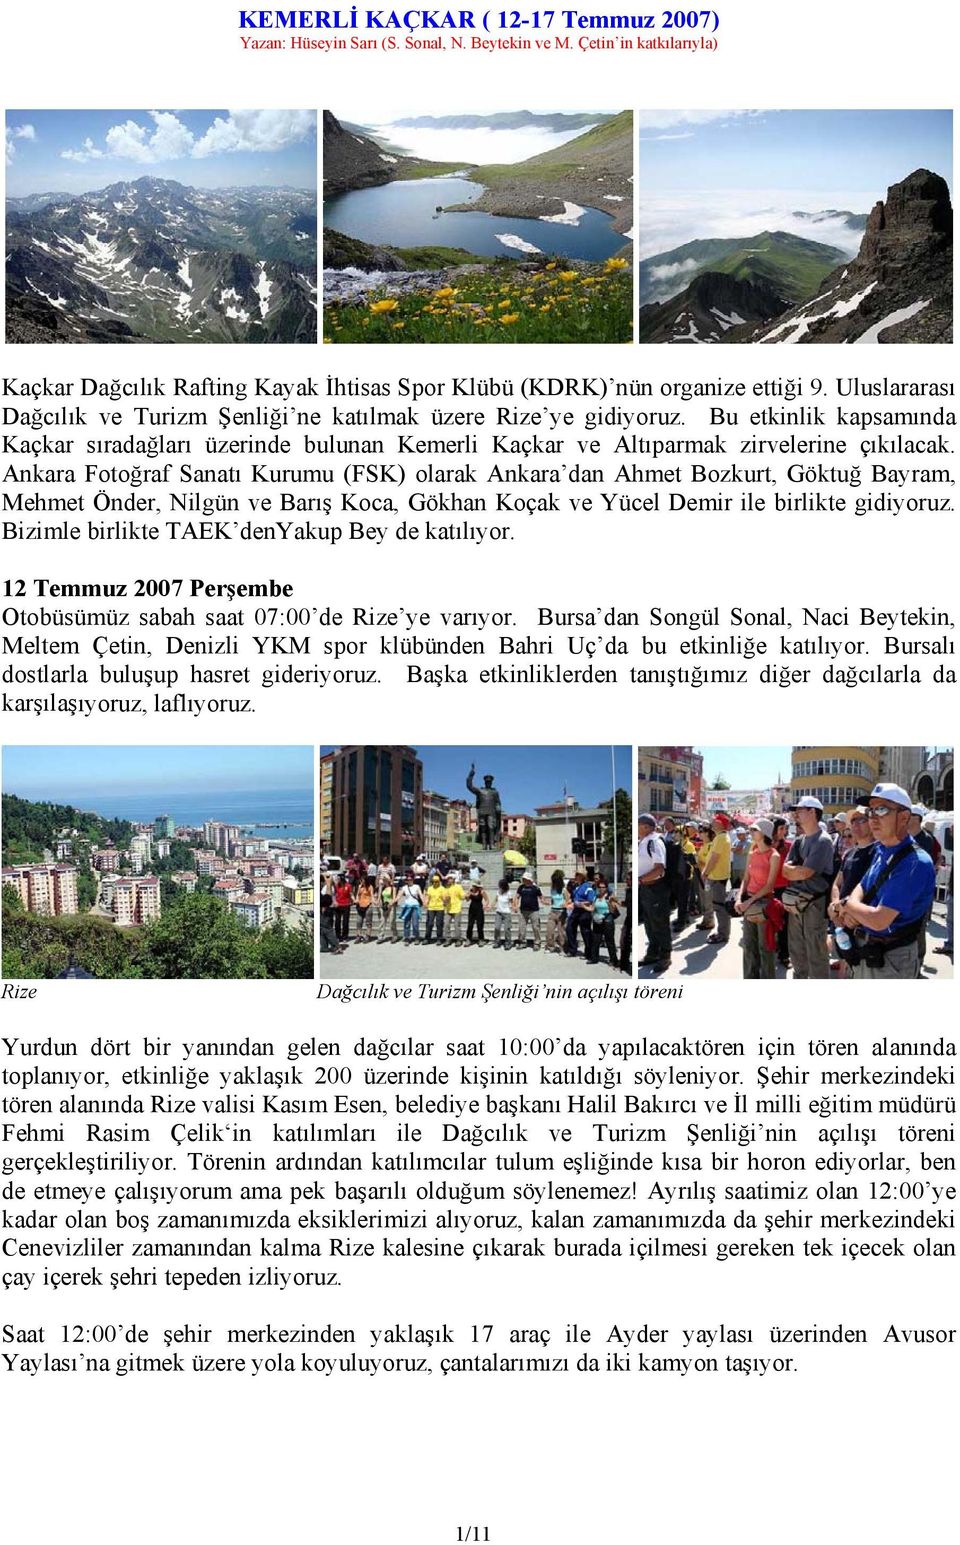 Ankara Fotoğraf Sanatı Kurumu (FSK) olarak Ankara dan Ahmet Bozkurt, Göktuğ Bayram, Mehmet Önder, Nilgün ve Barış Koca, Gökhan Koçak ve Yücel Demir ile birlikte gidiyoruz.